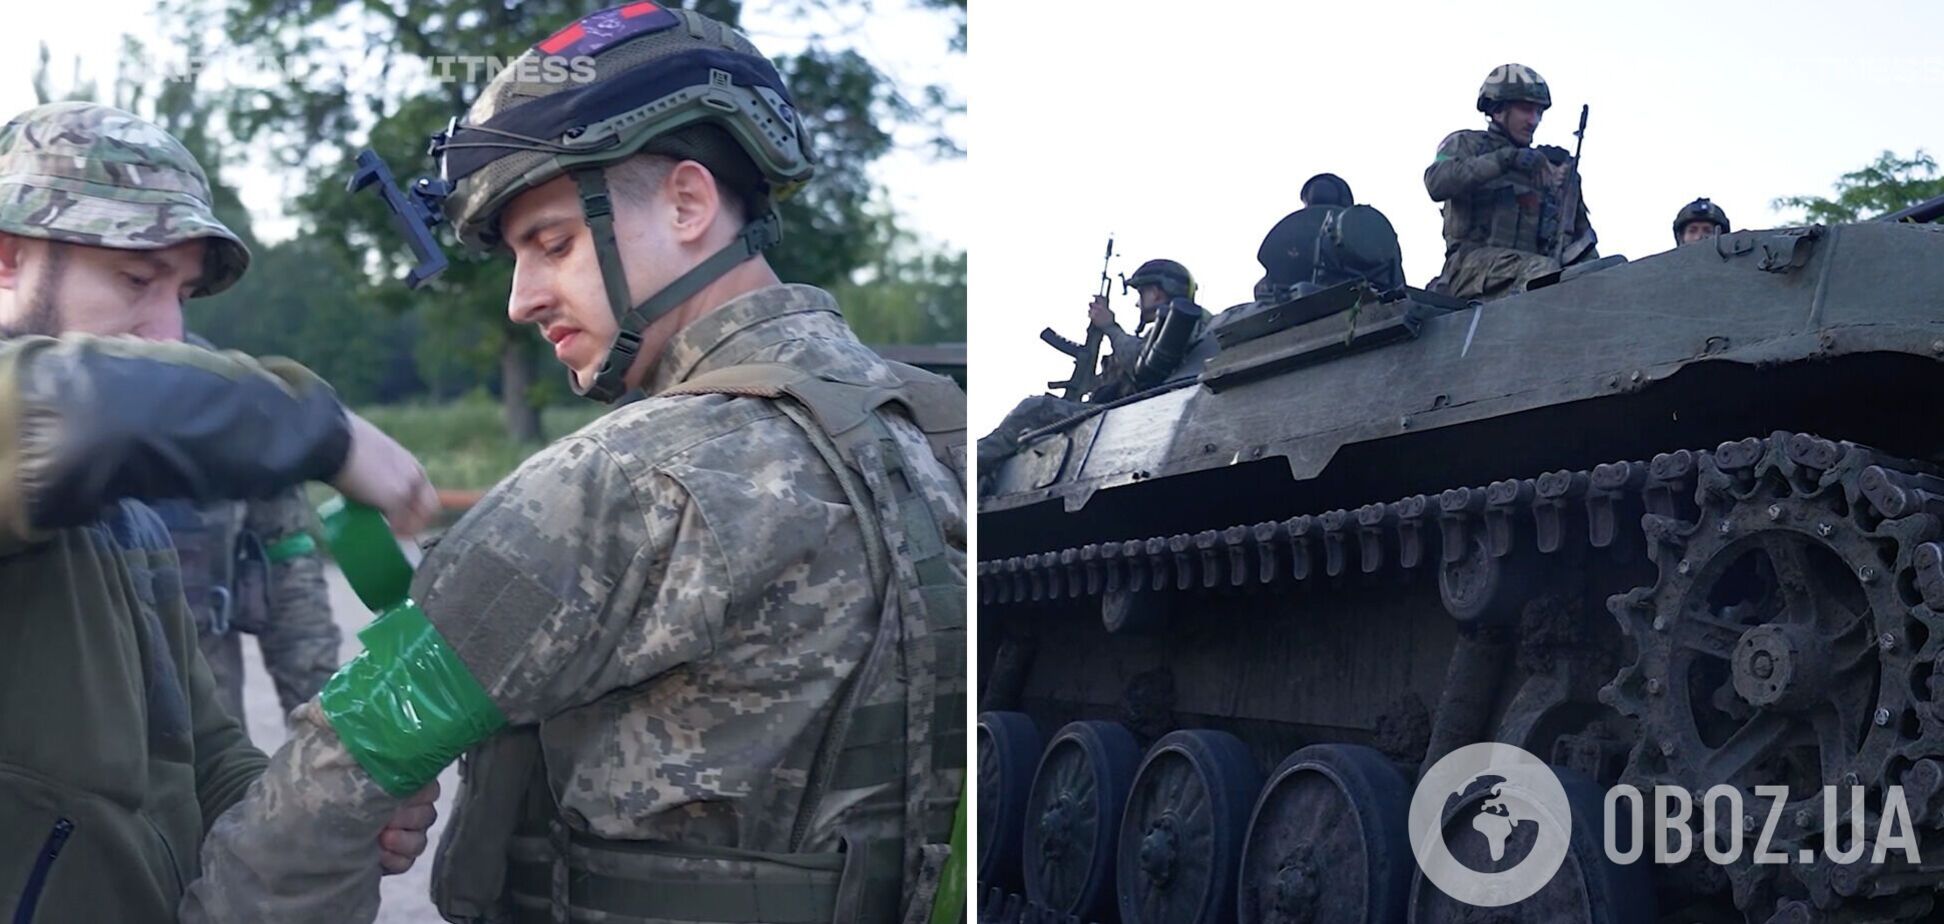 Наймолодшому бійцю – 20 років: українські десантники розповіли, як штурмують російські окопи під Бахмутом. Відео